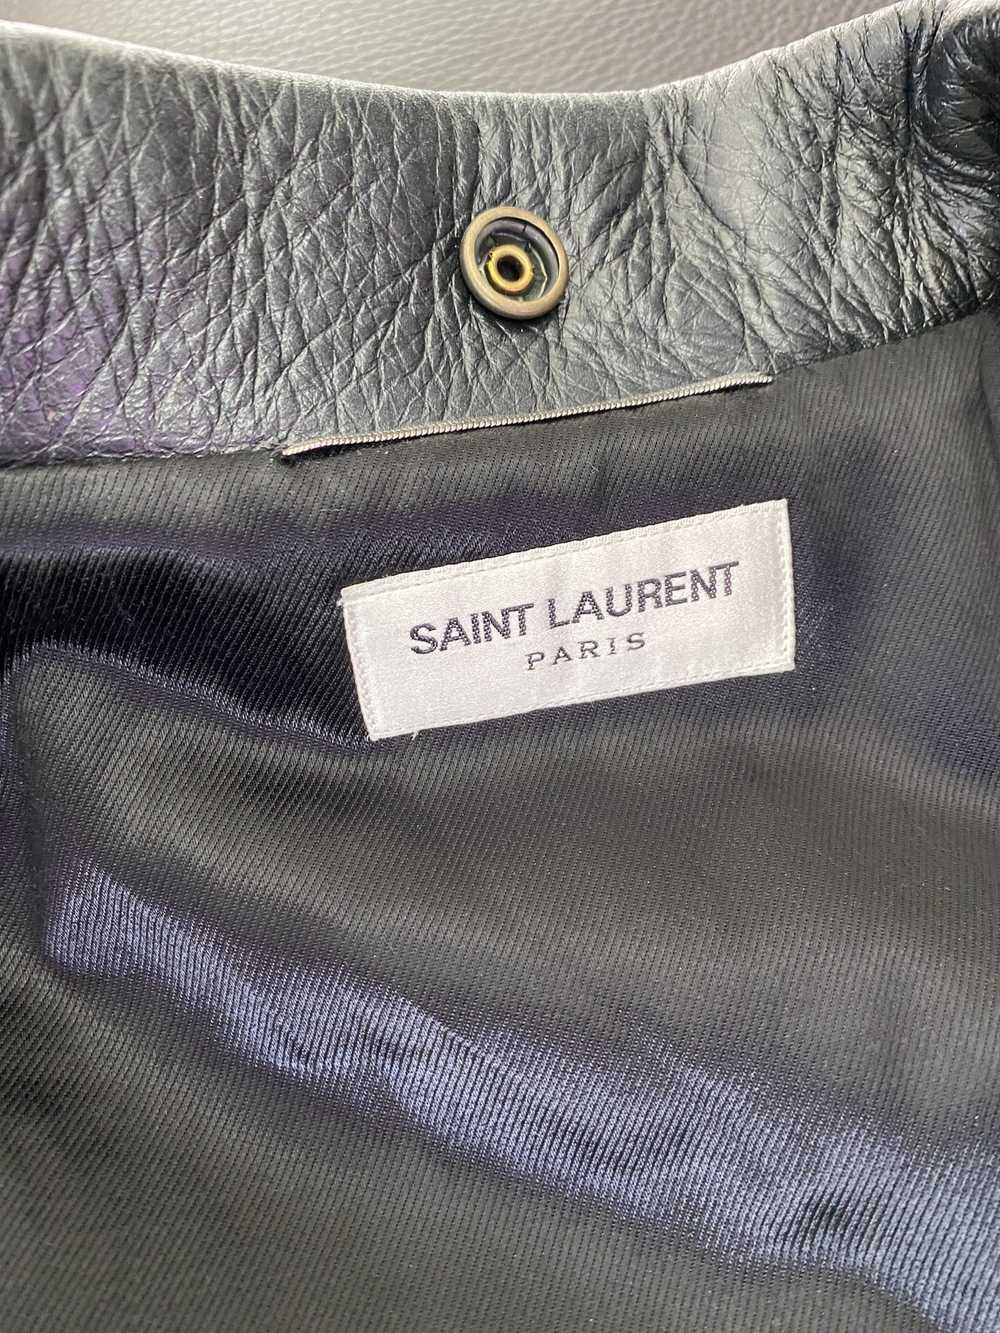 Yves Saint Laurent Saint Laurent Leather Jacket "… - image 5